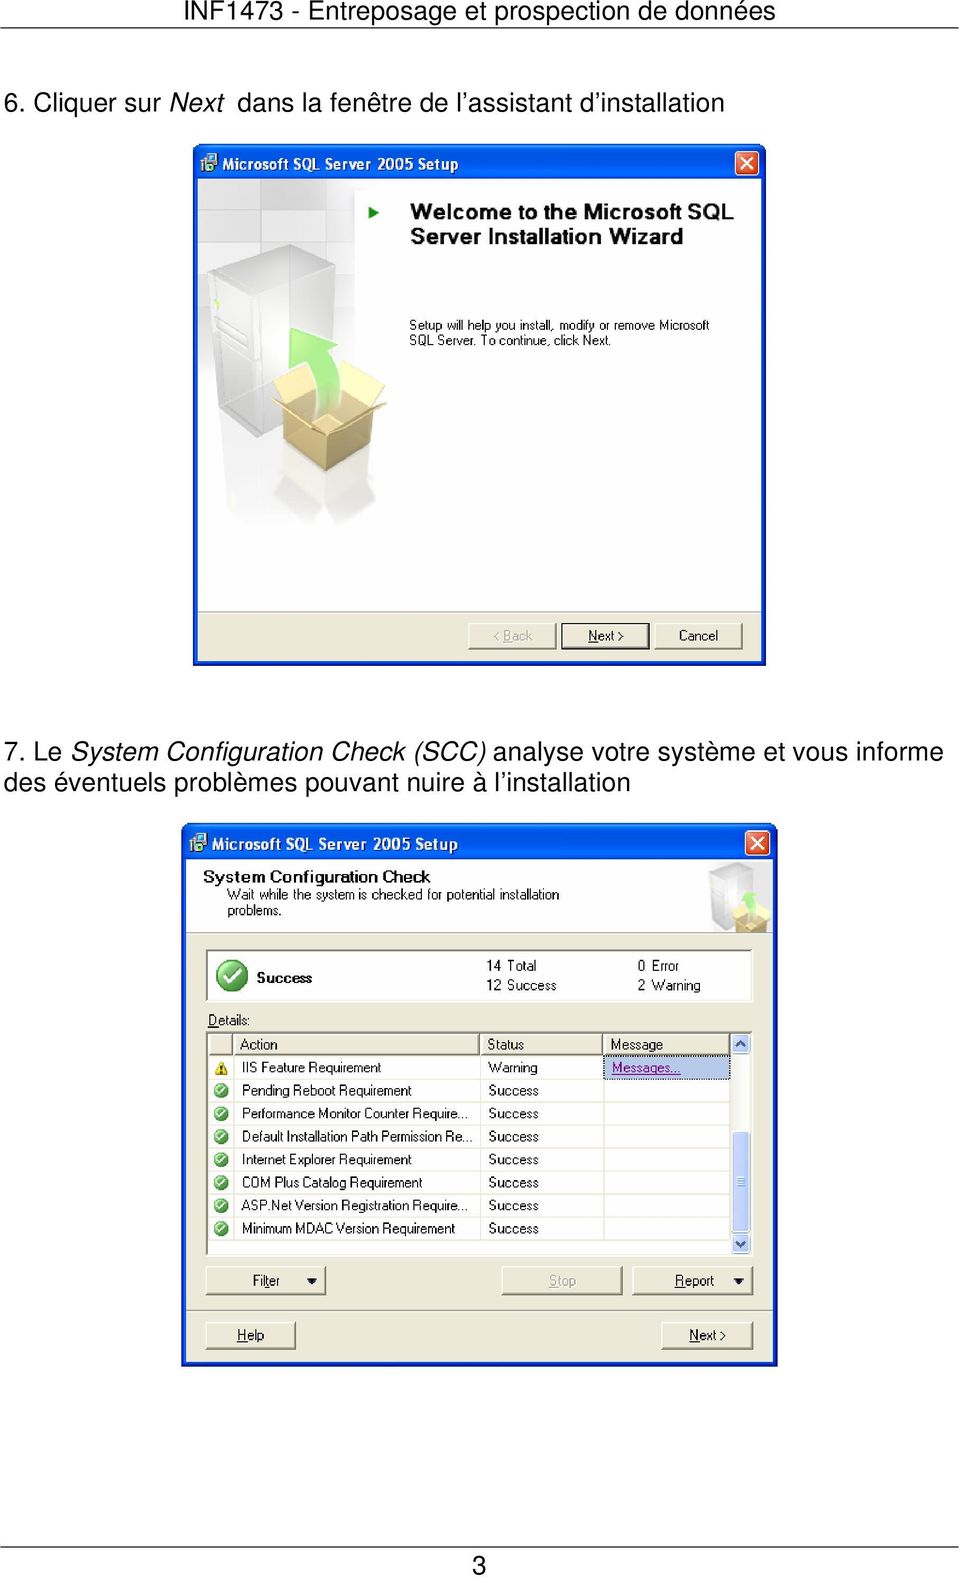 Le System Configuration Check (SCC) analyse votre